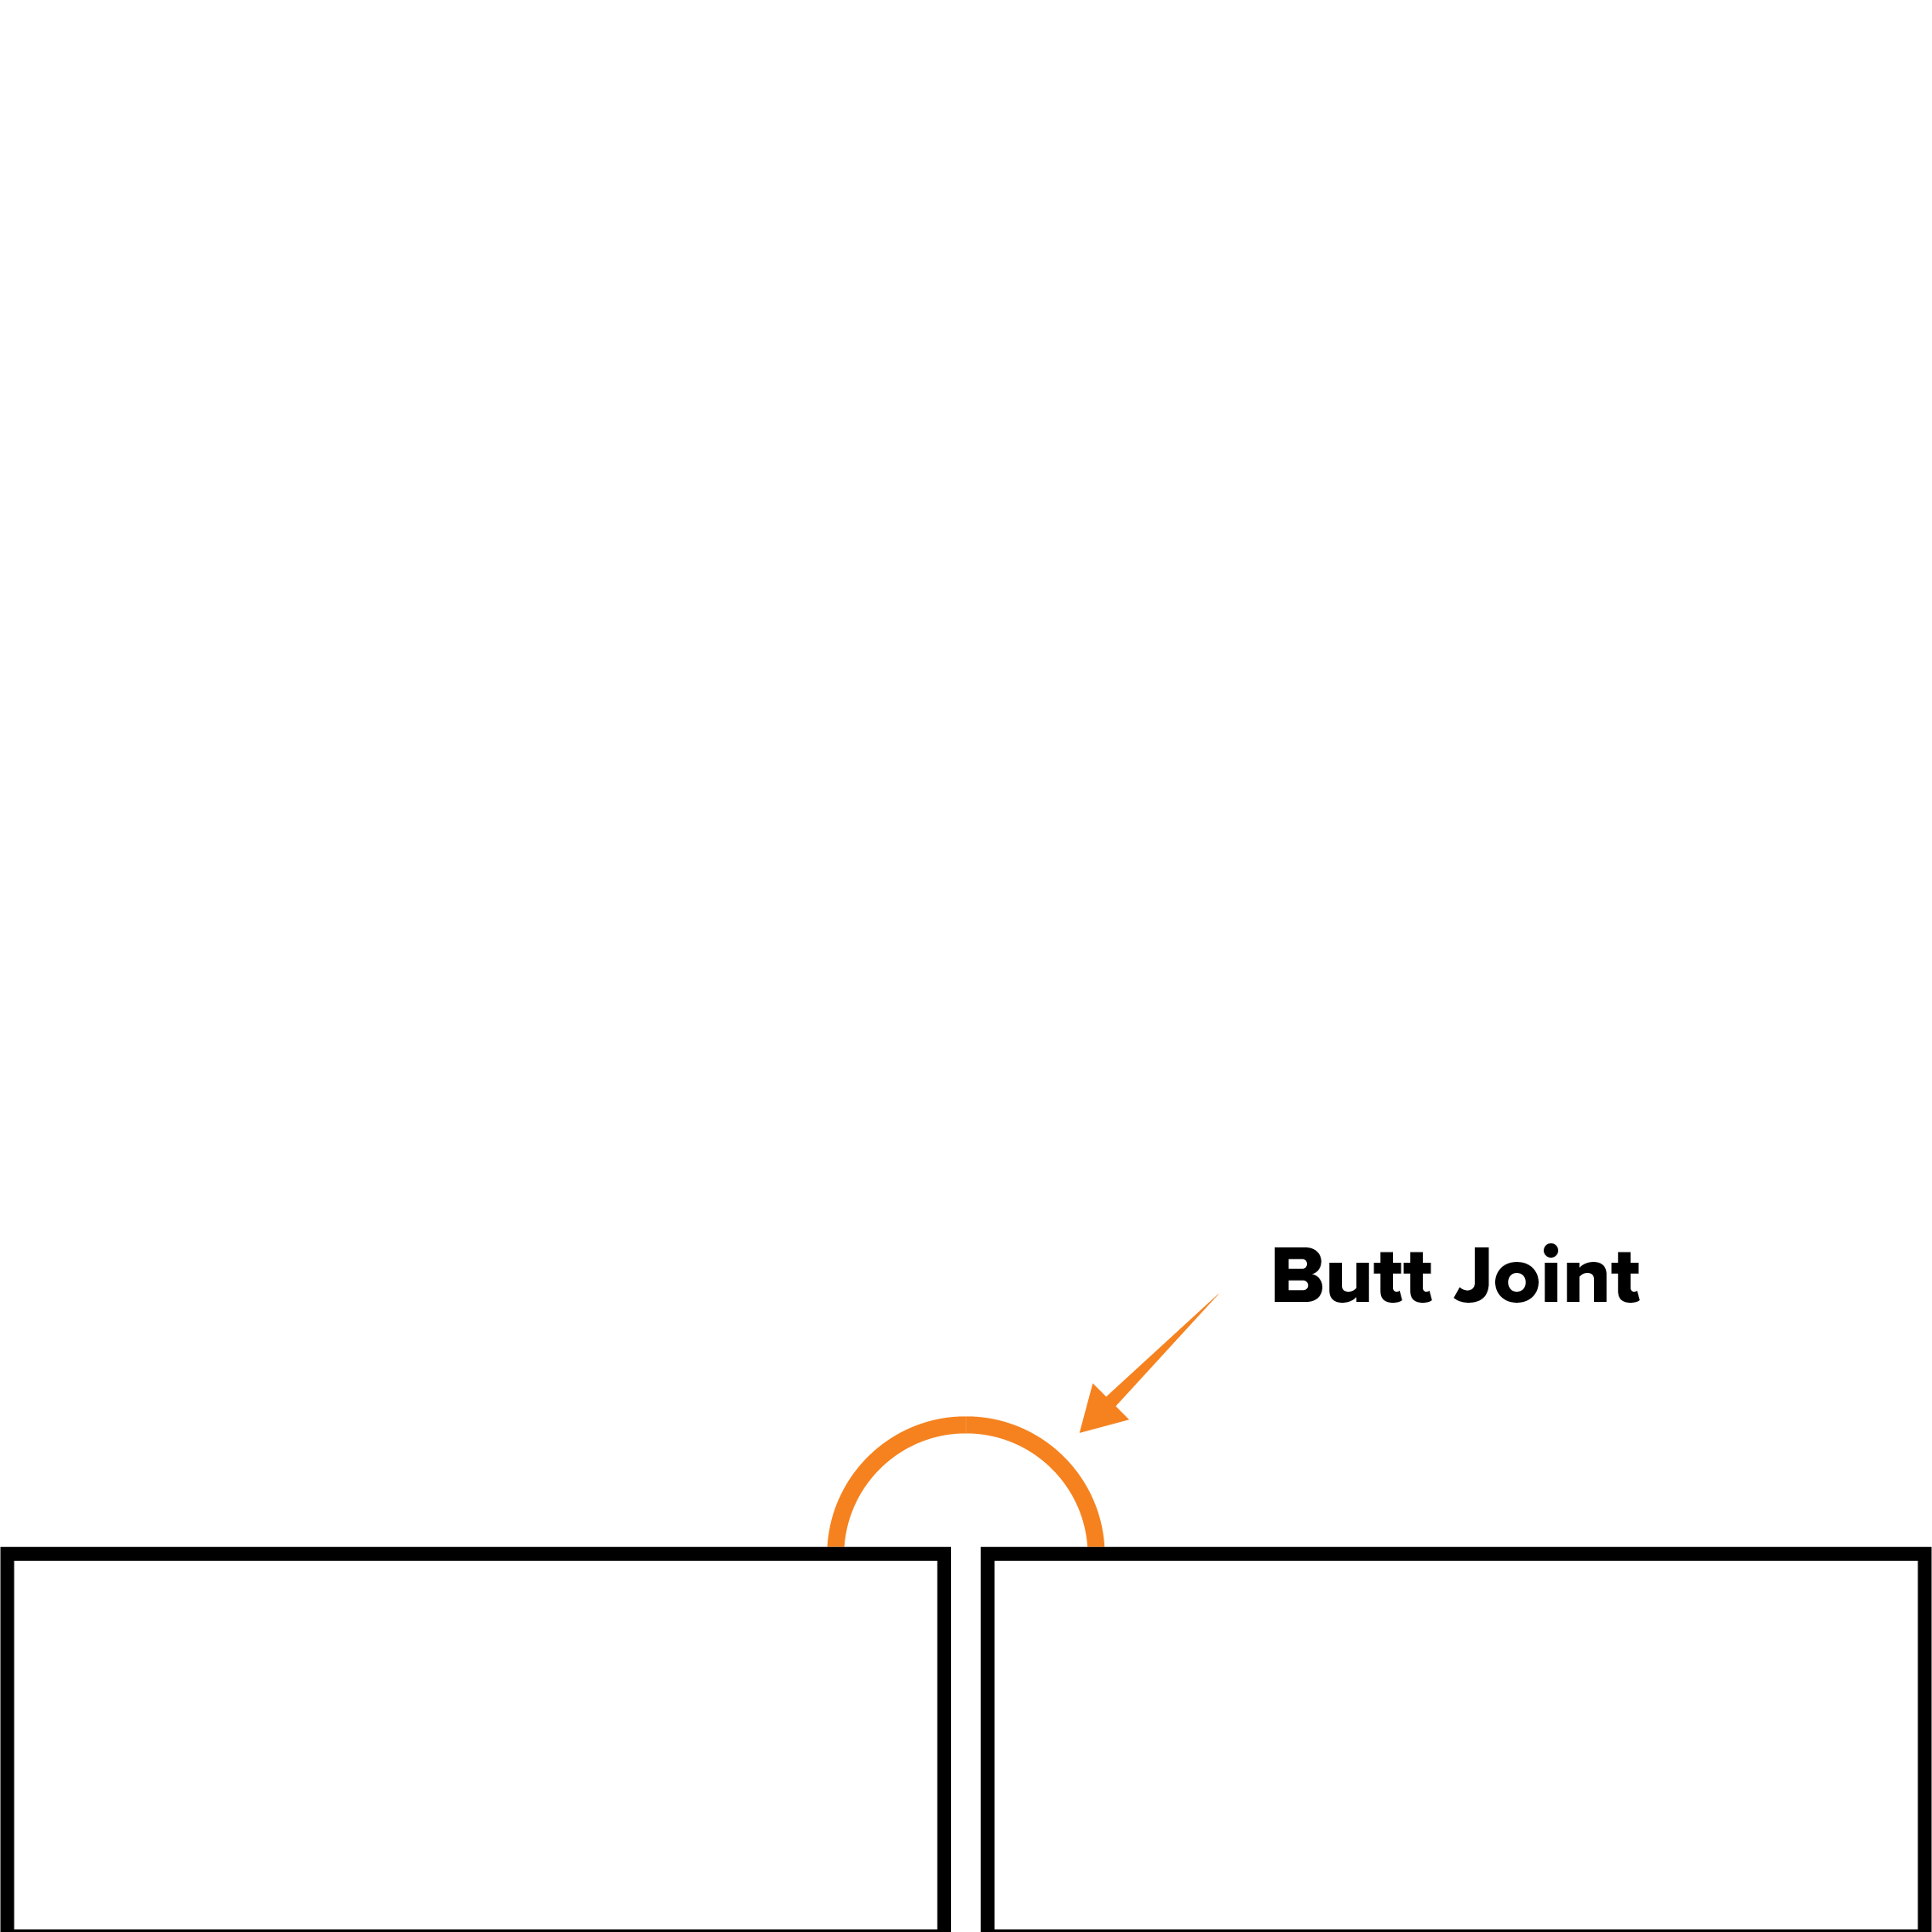 Butt Joint